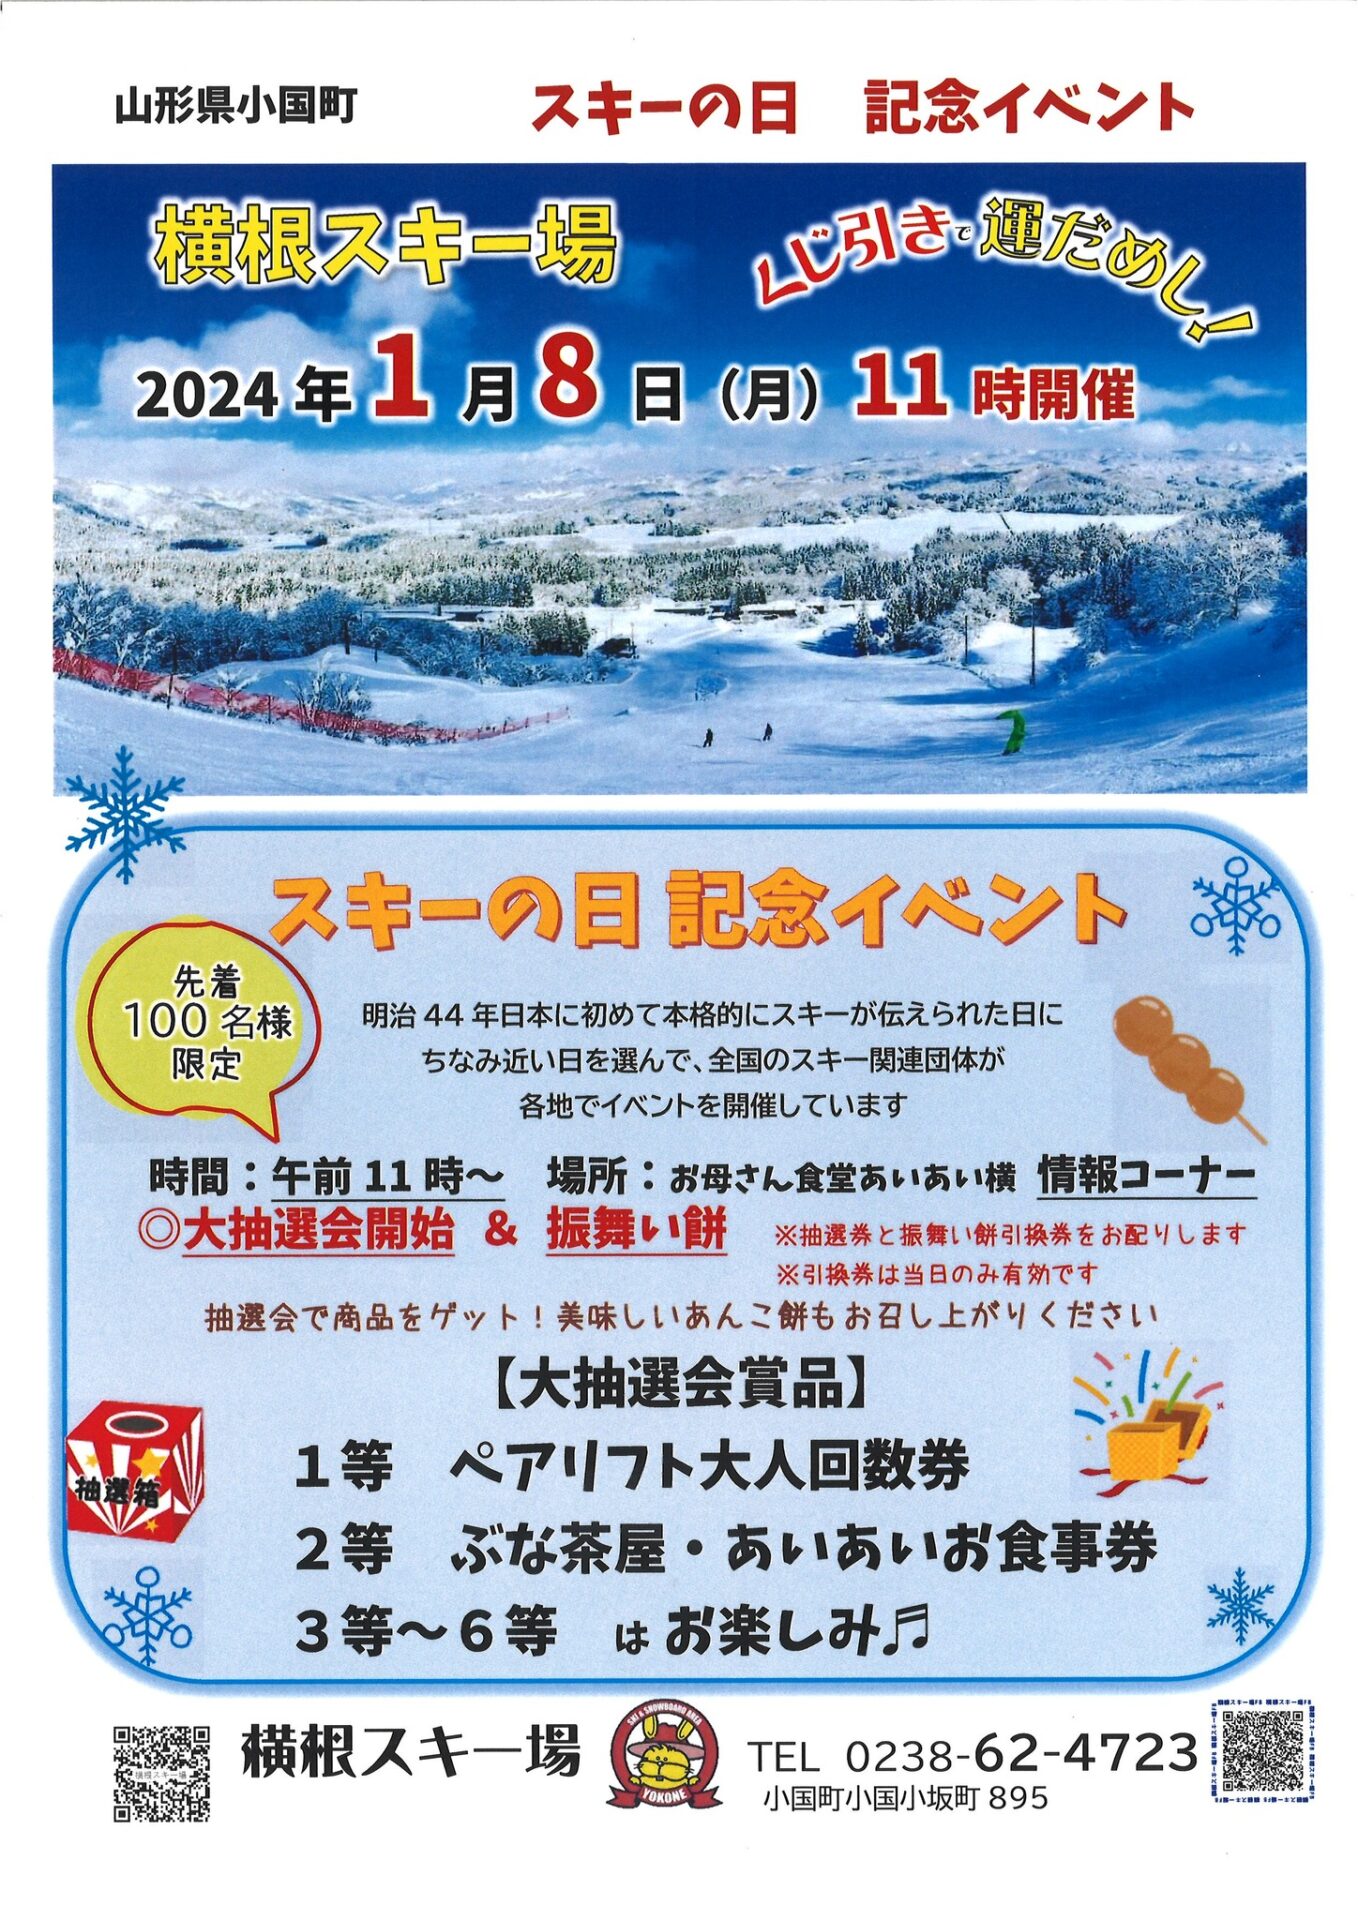 【横根スキー場】「スキーの日記念イベント」開催のお知らせ